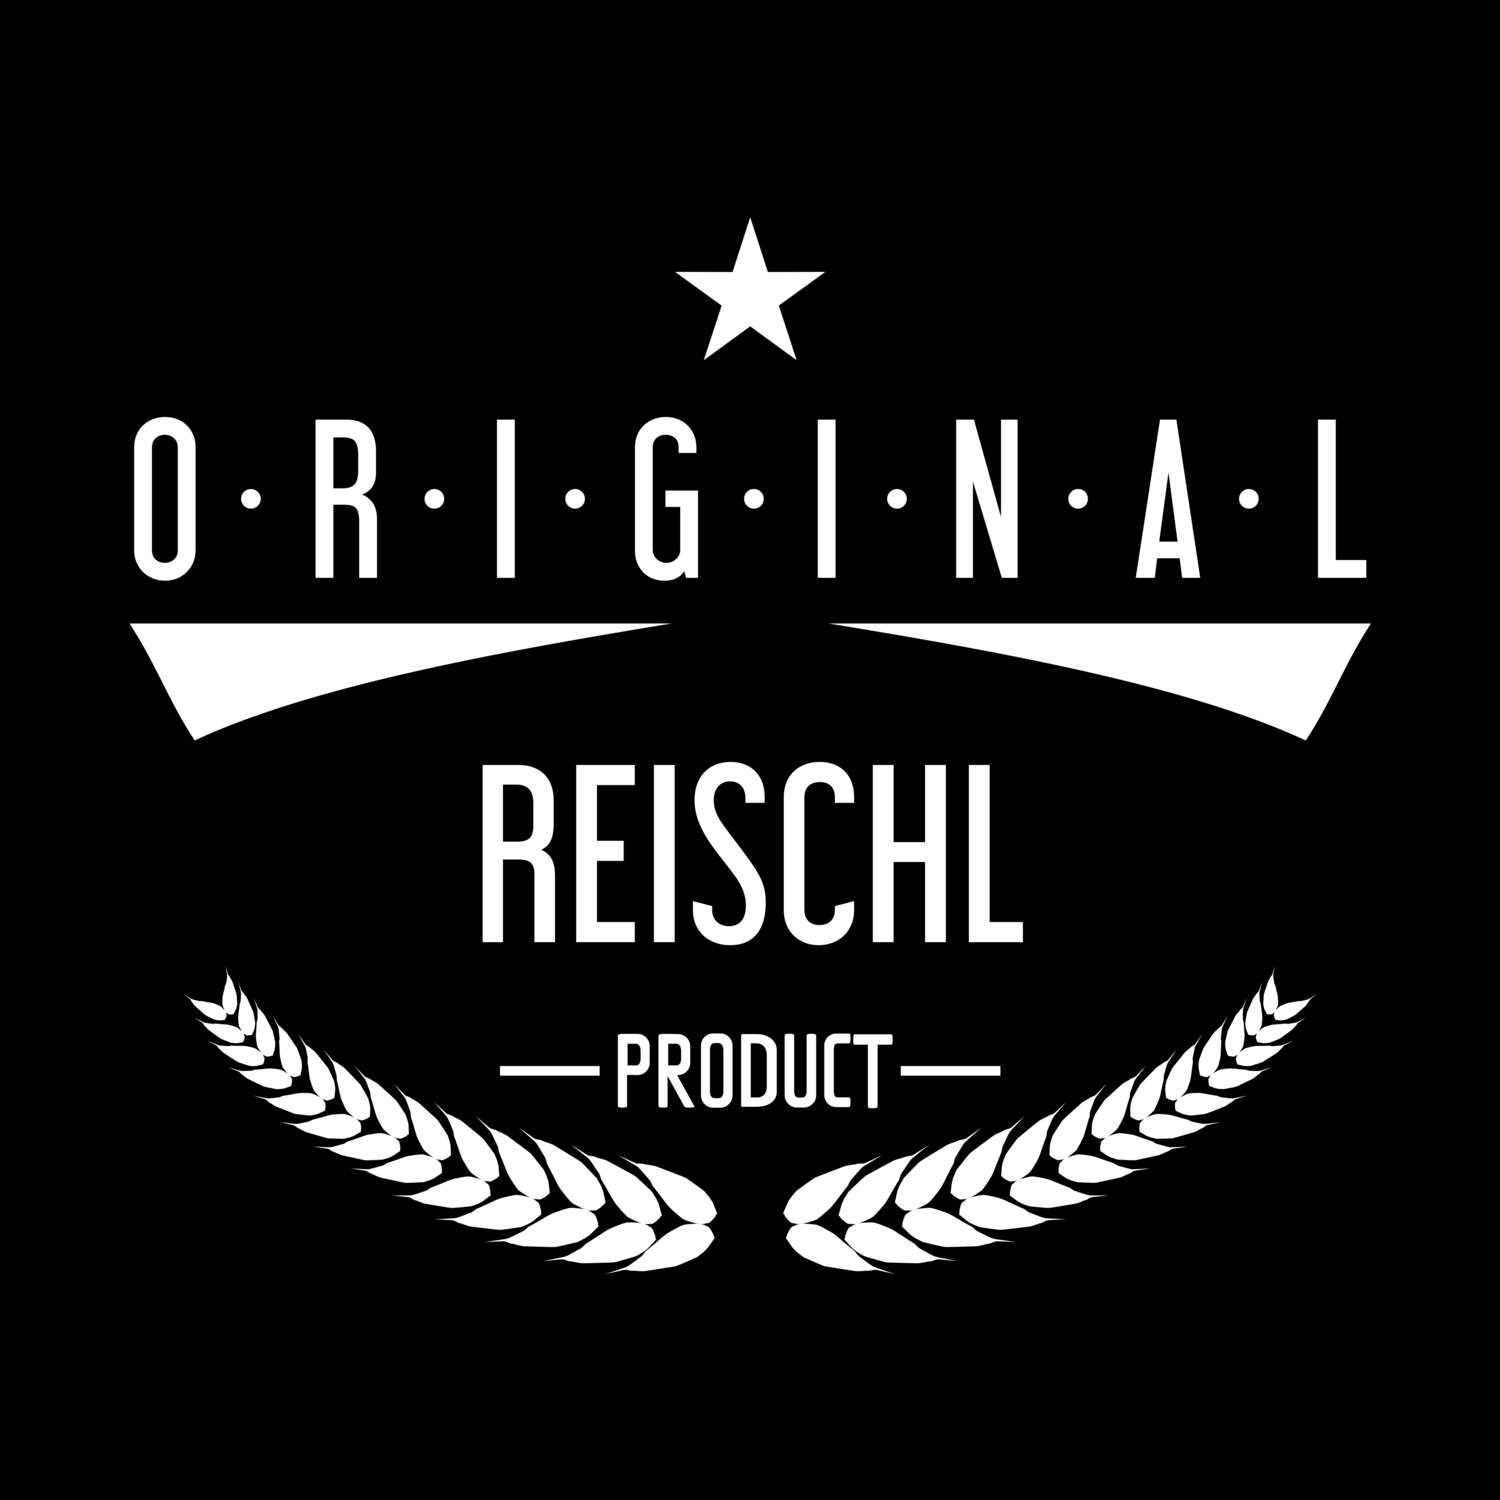 Reischl T-Shirt »Original Product«